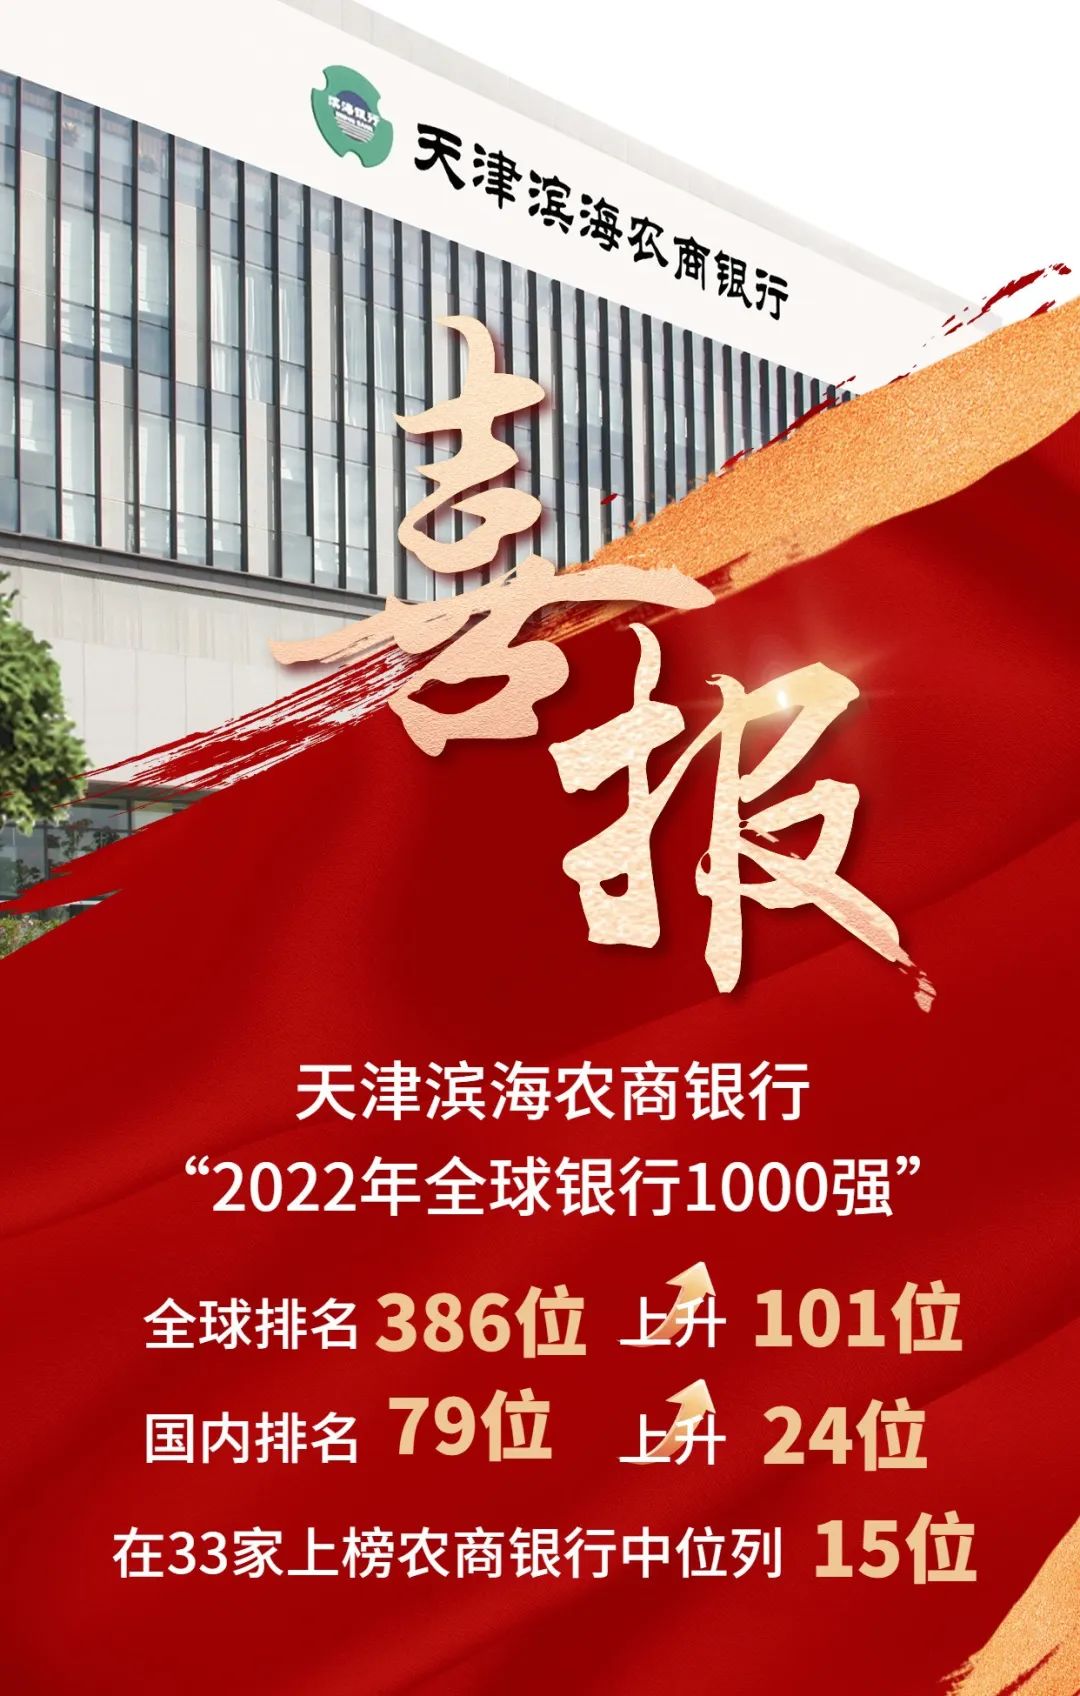 天津滨海农商银行“2022年全球银行1000强”排名上升101位，跃升至第386位